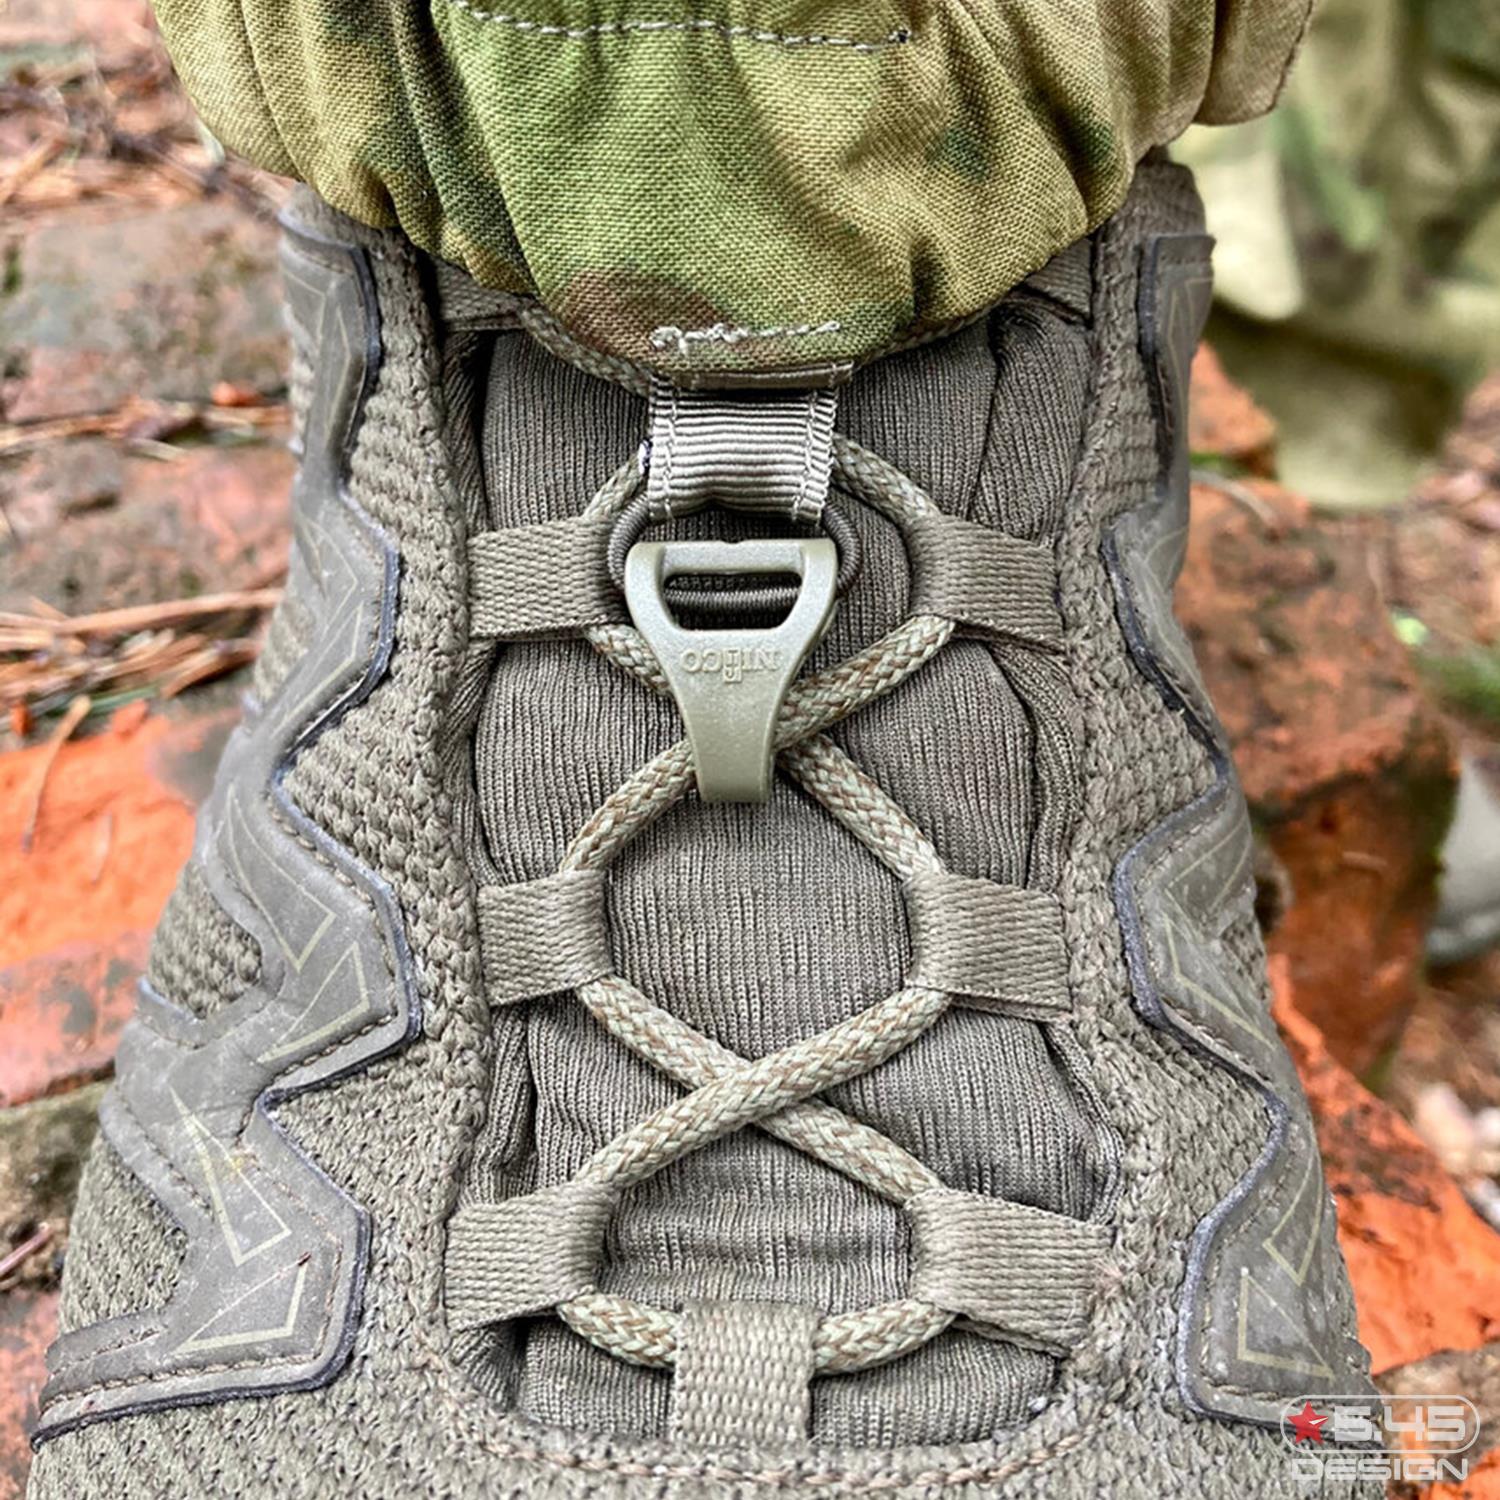 На передней, нижней части штанины имеются пластиковые крючки, которые можно закрепить на шнурках ботинок.